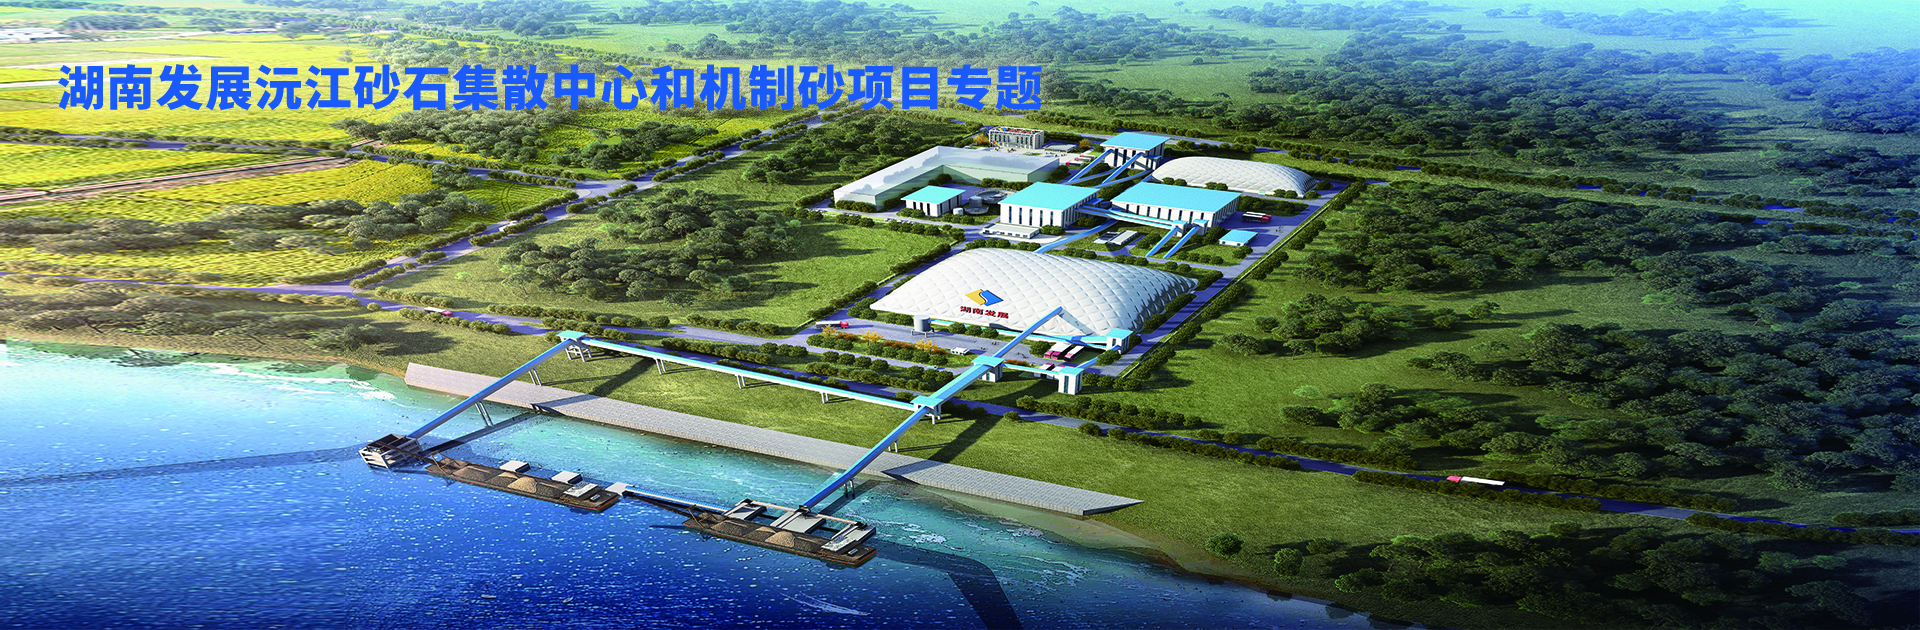 sports沅江砂石集散中心及机制砂项目开幕视频